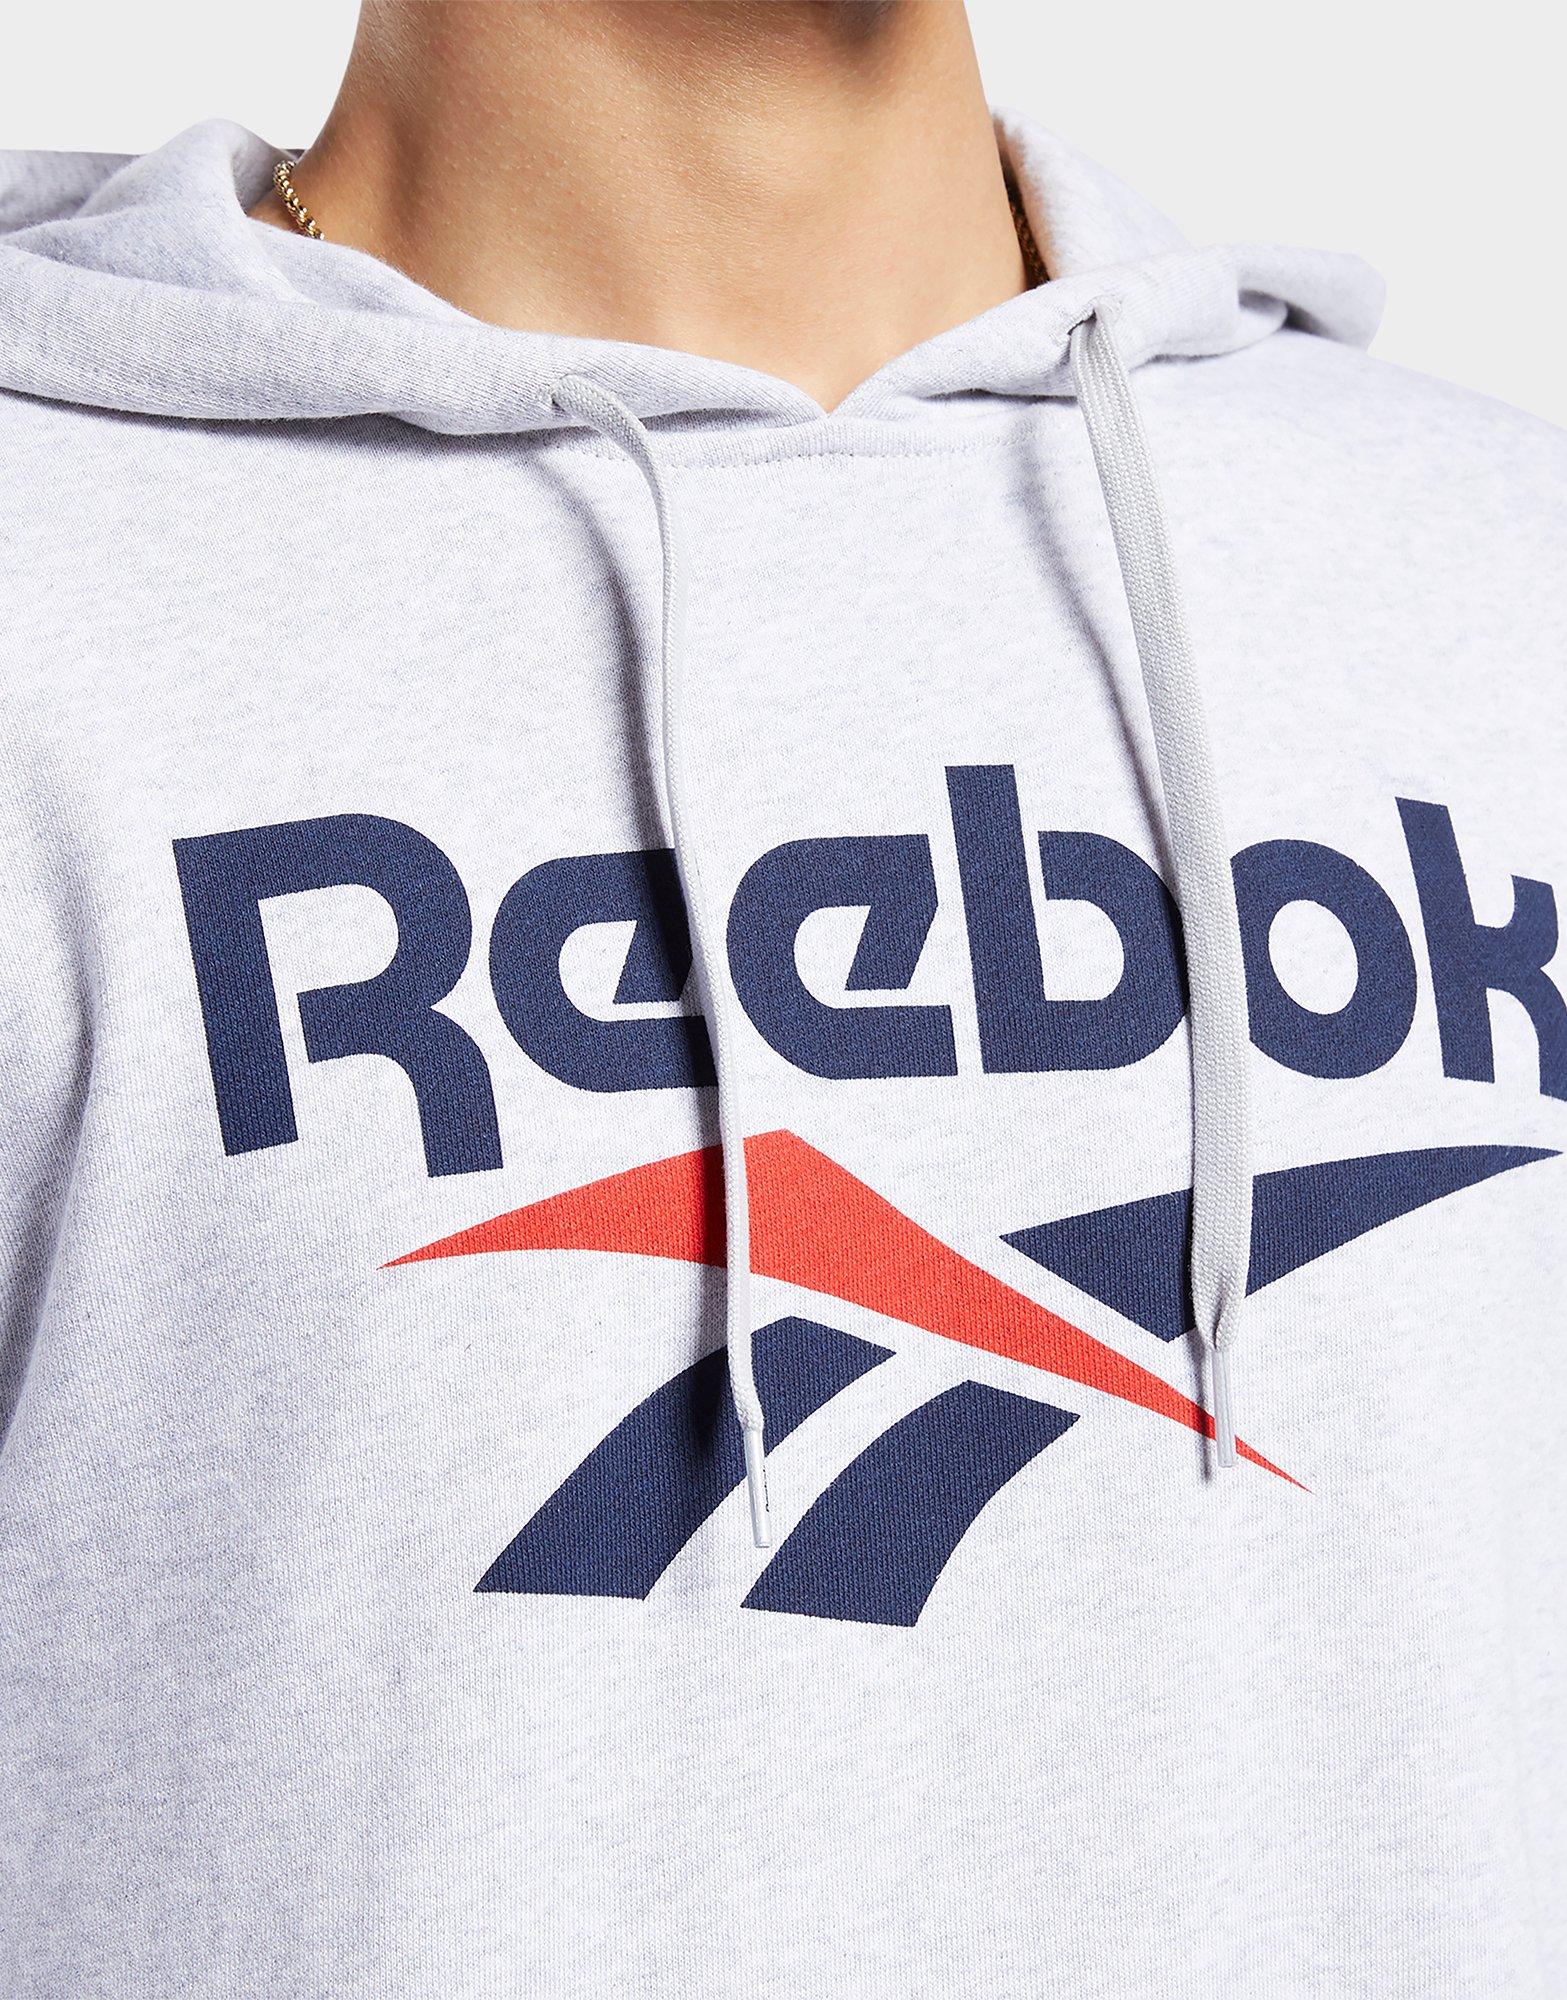 reebok classic vector hoodie